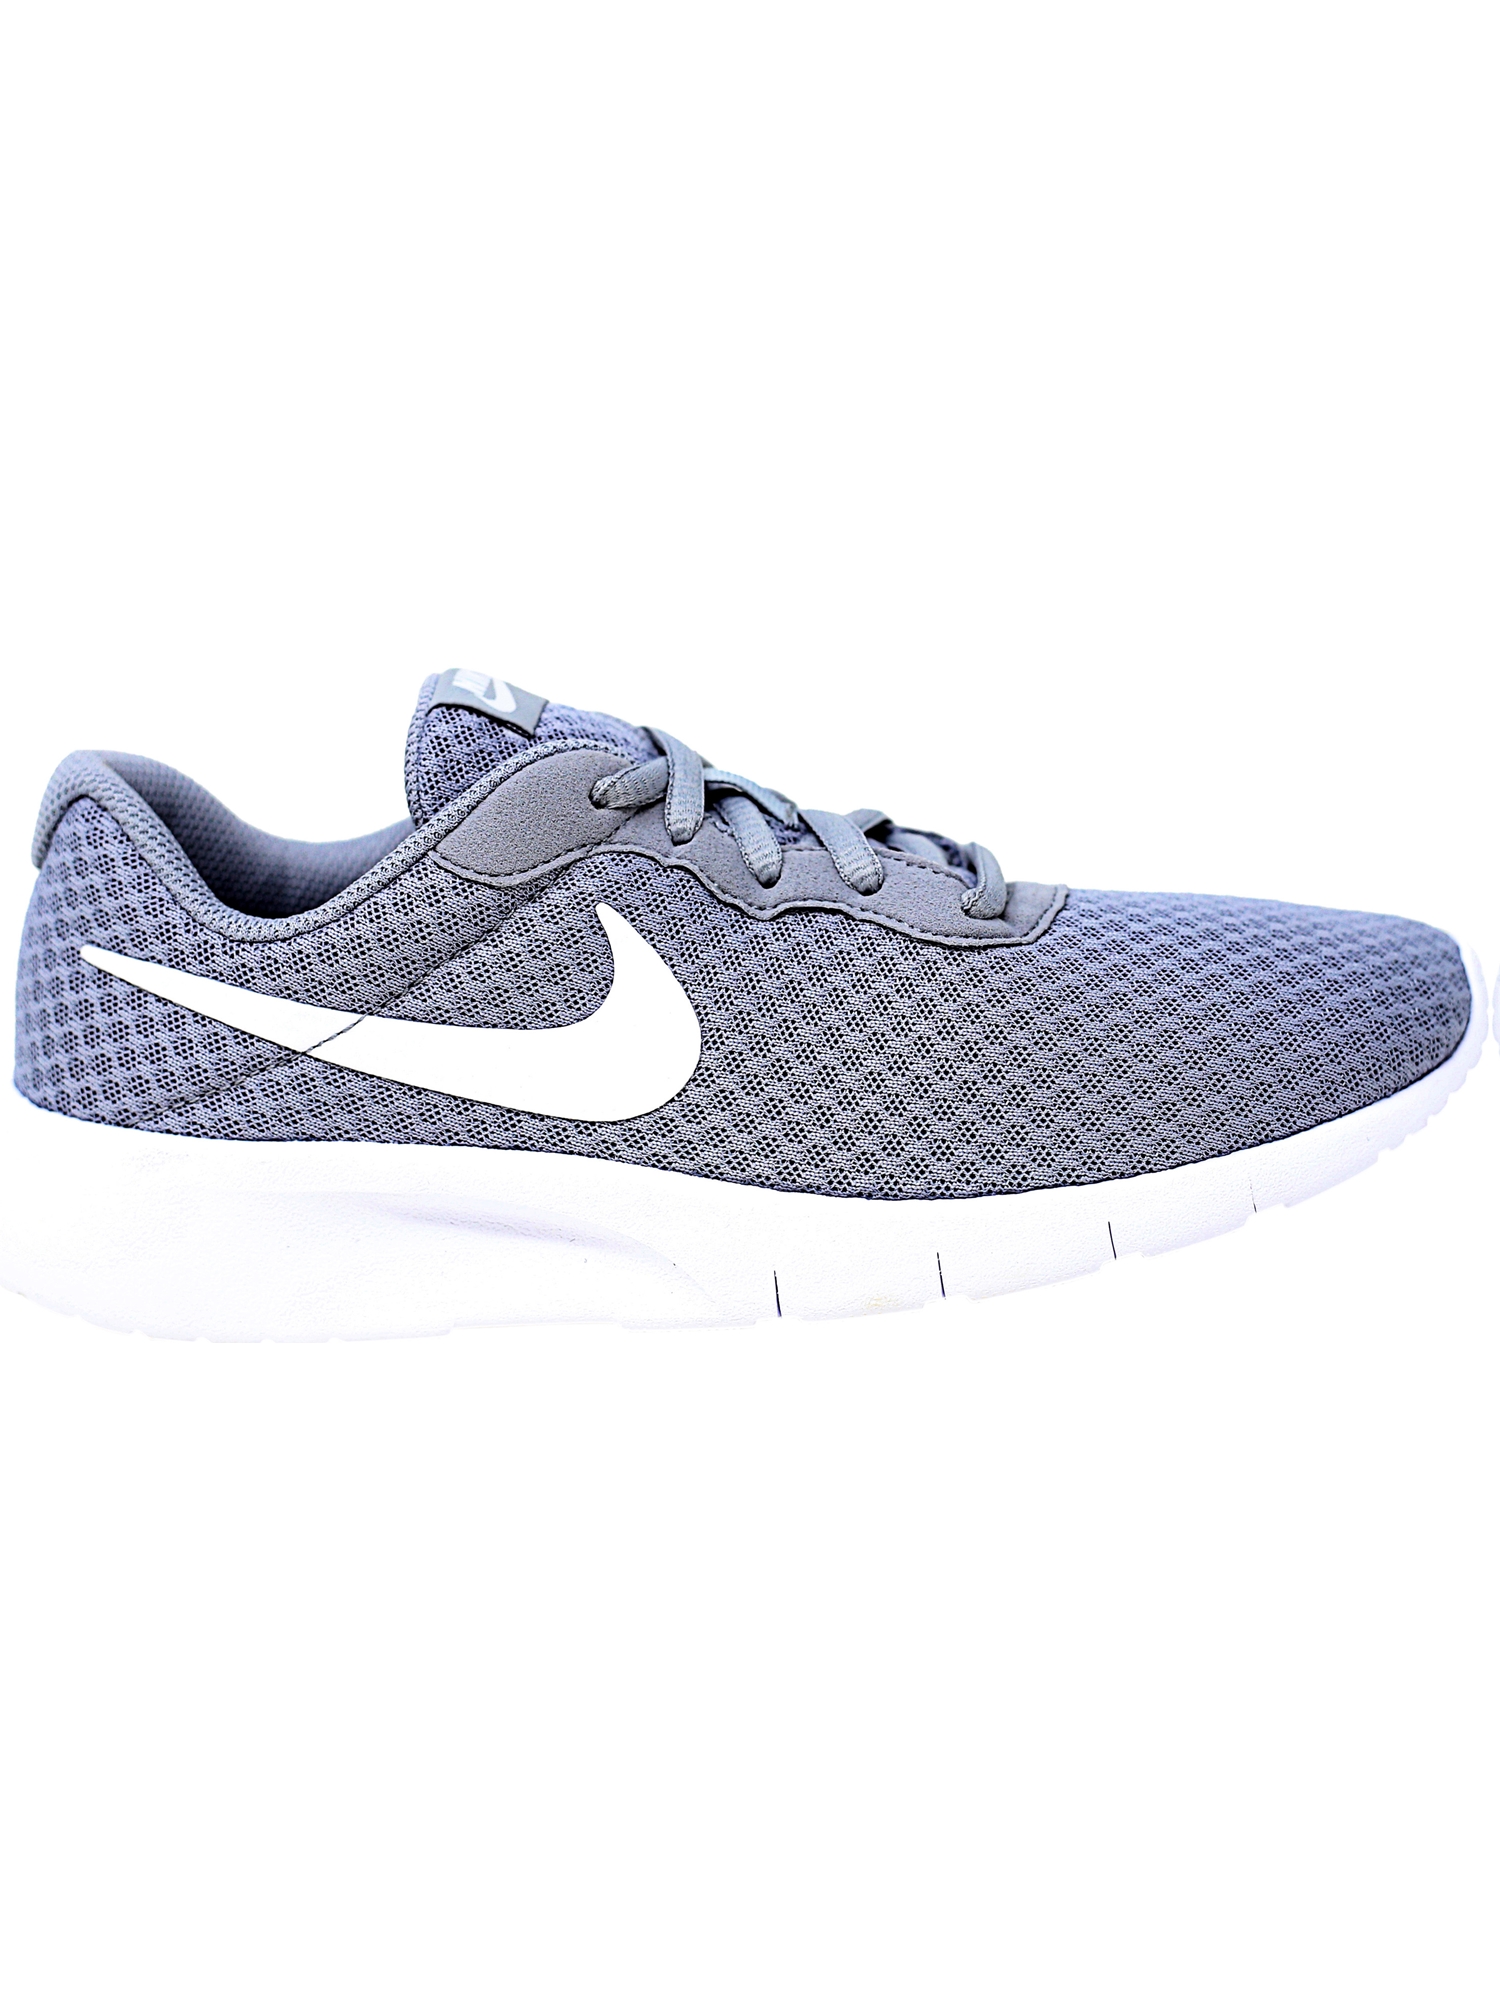 Nike Tanjun Wolf Grey / White - Ankle-High Mesh Running Shoe 7M - image 3 of 6